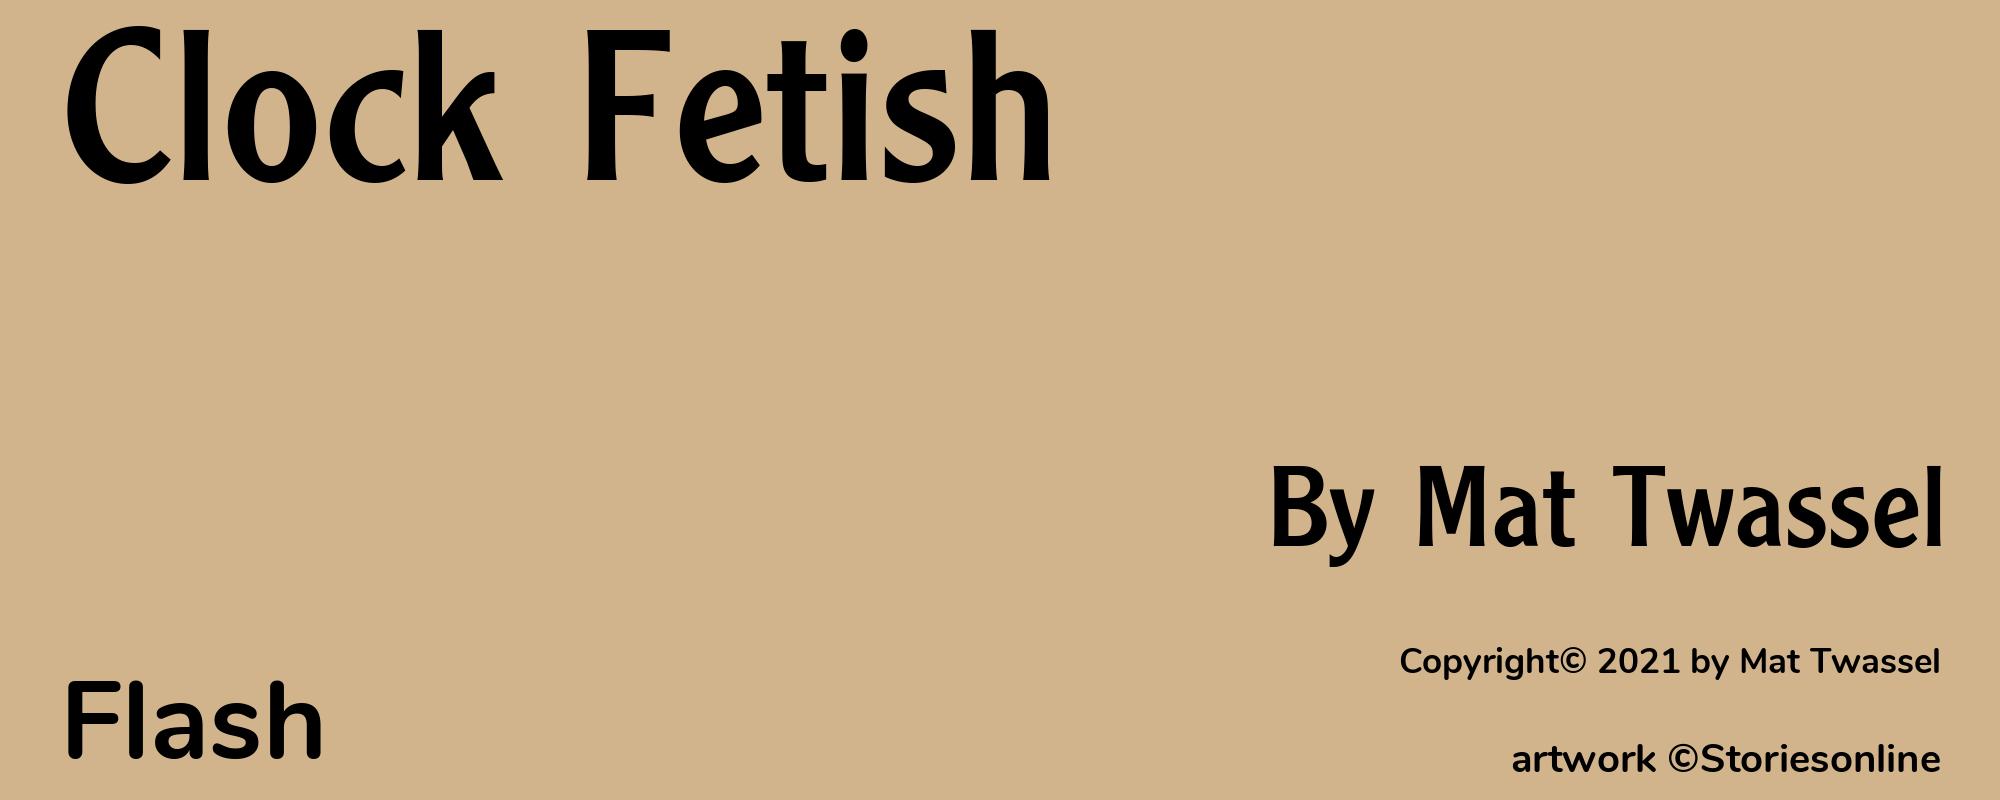 Clock Fetish - Cover